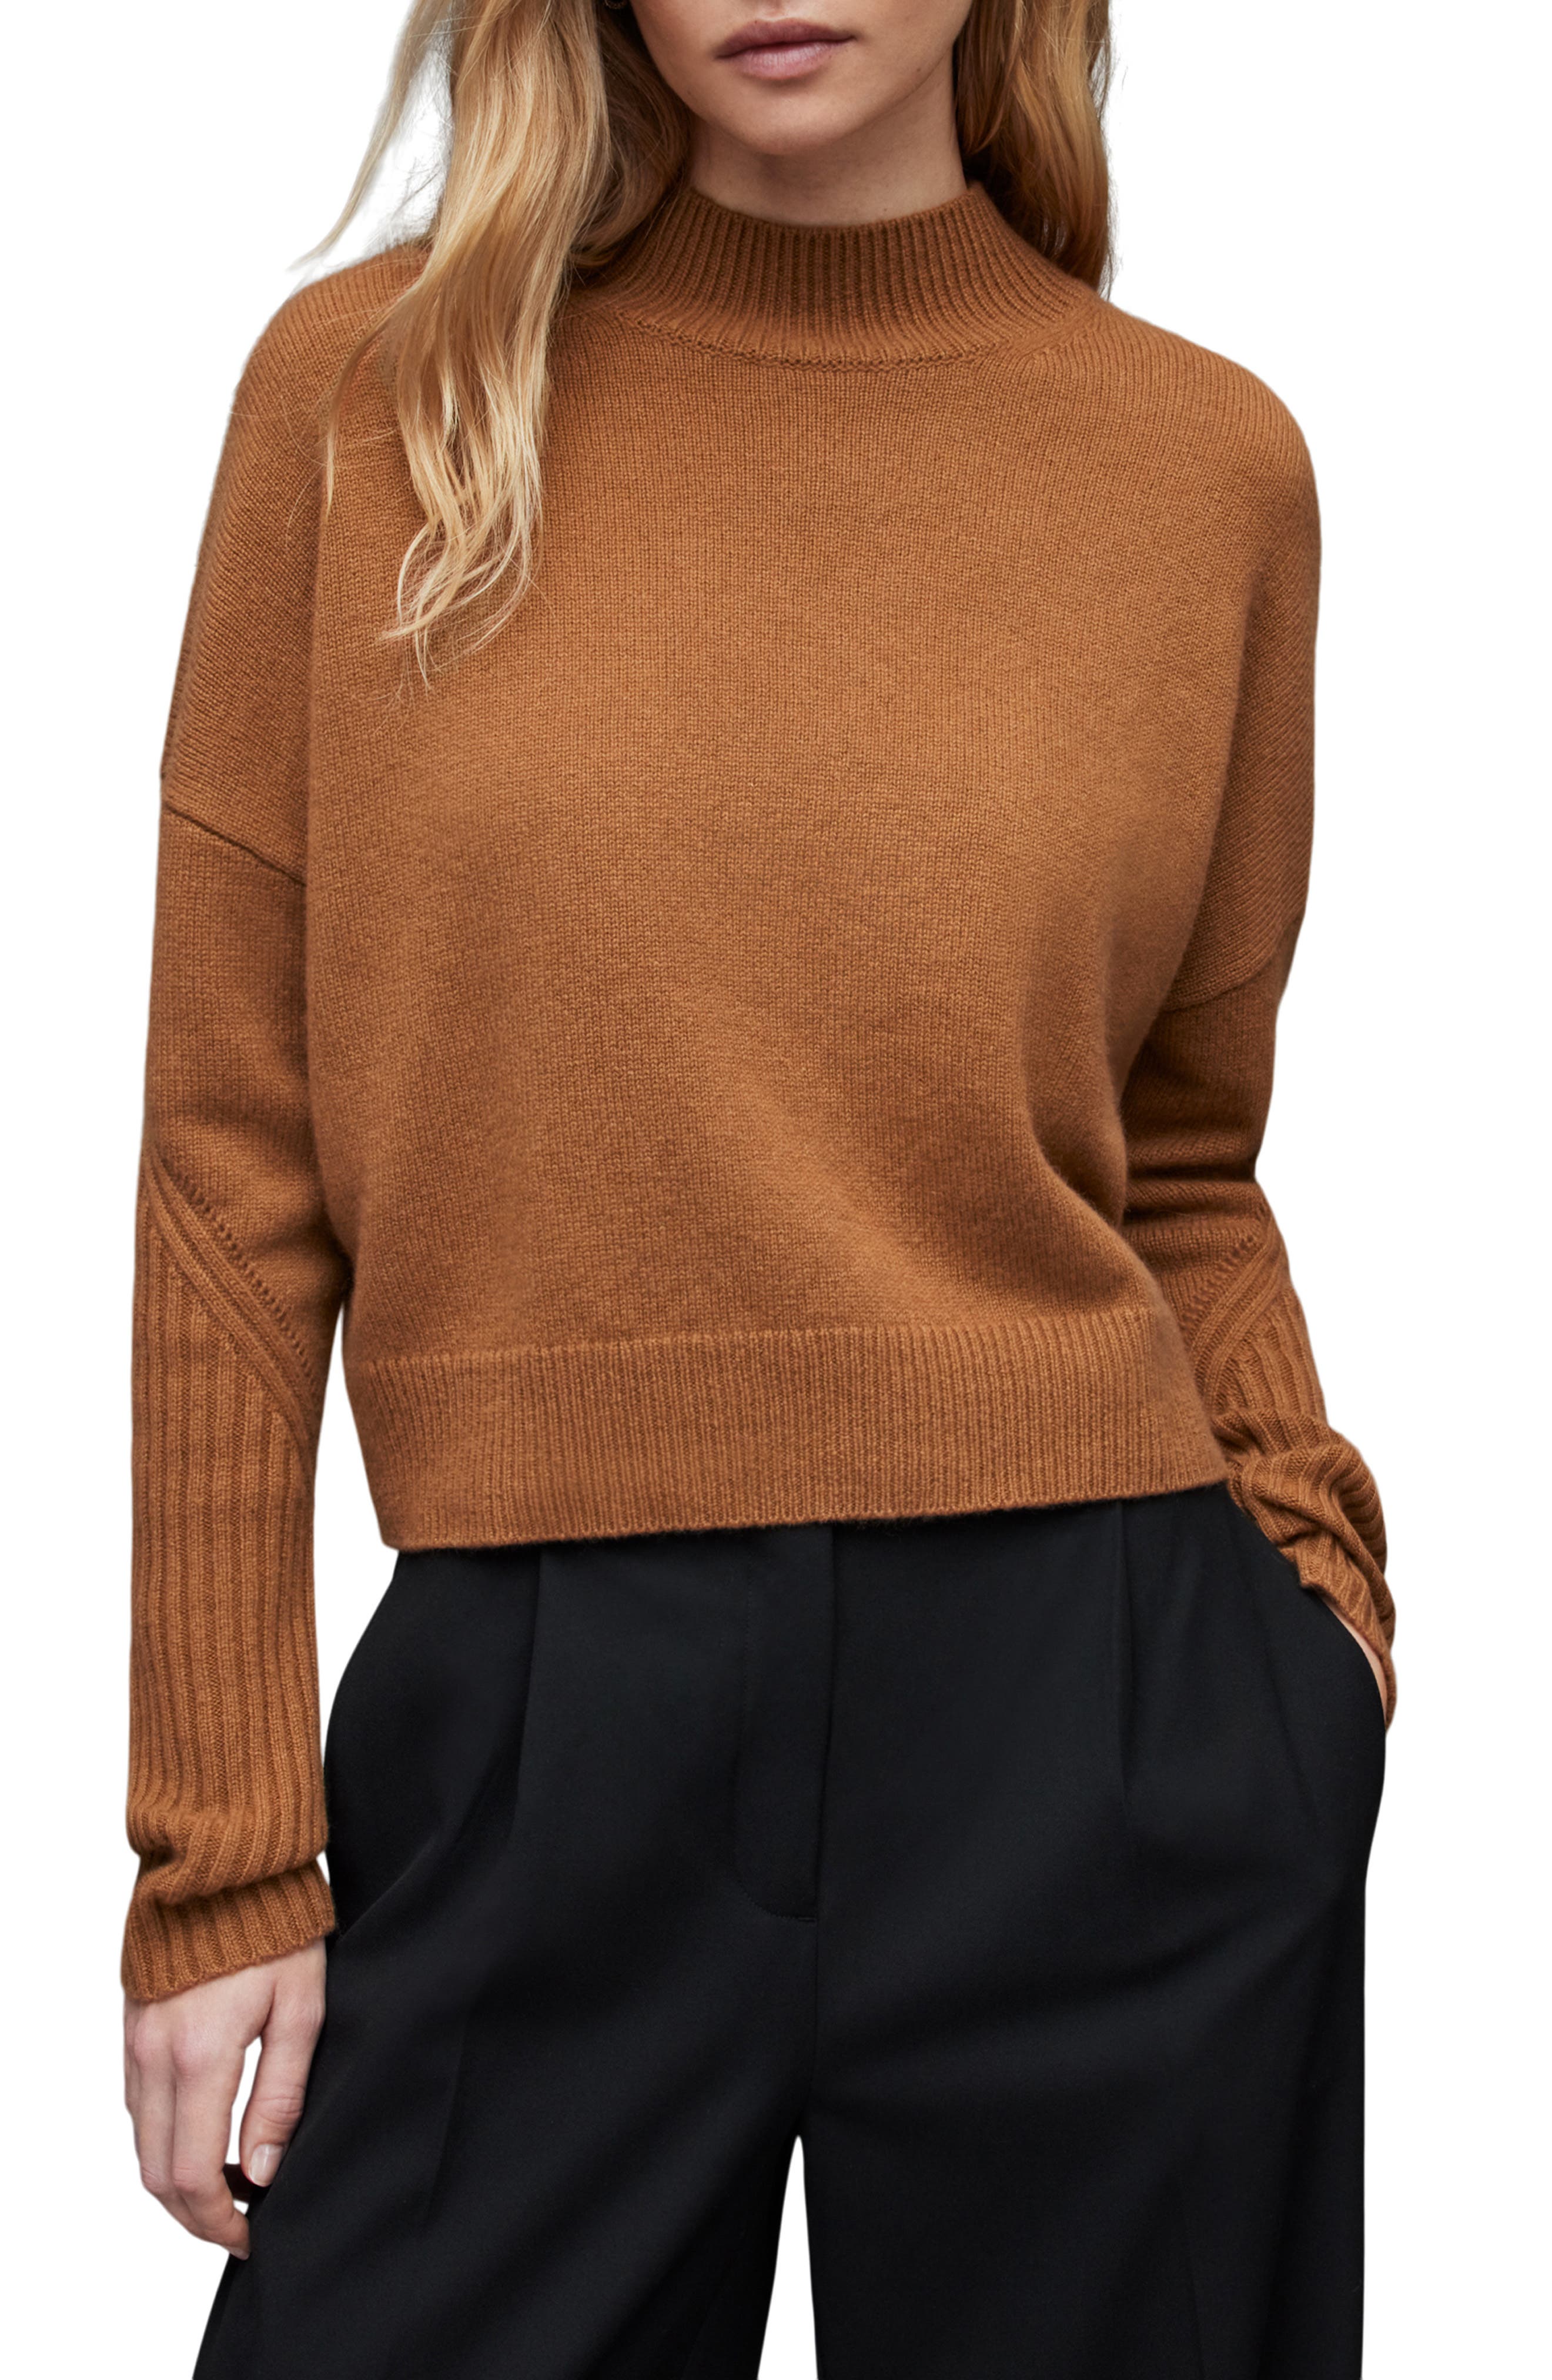 人気商品超目玉 目玉商品 レゾム メンズ ニット・セーター アウター Sweater 通販